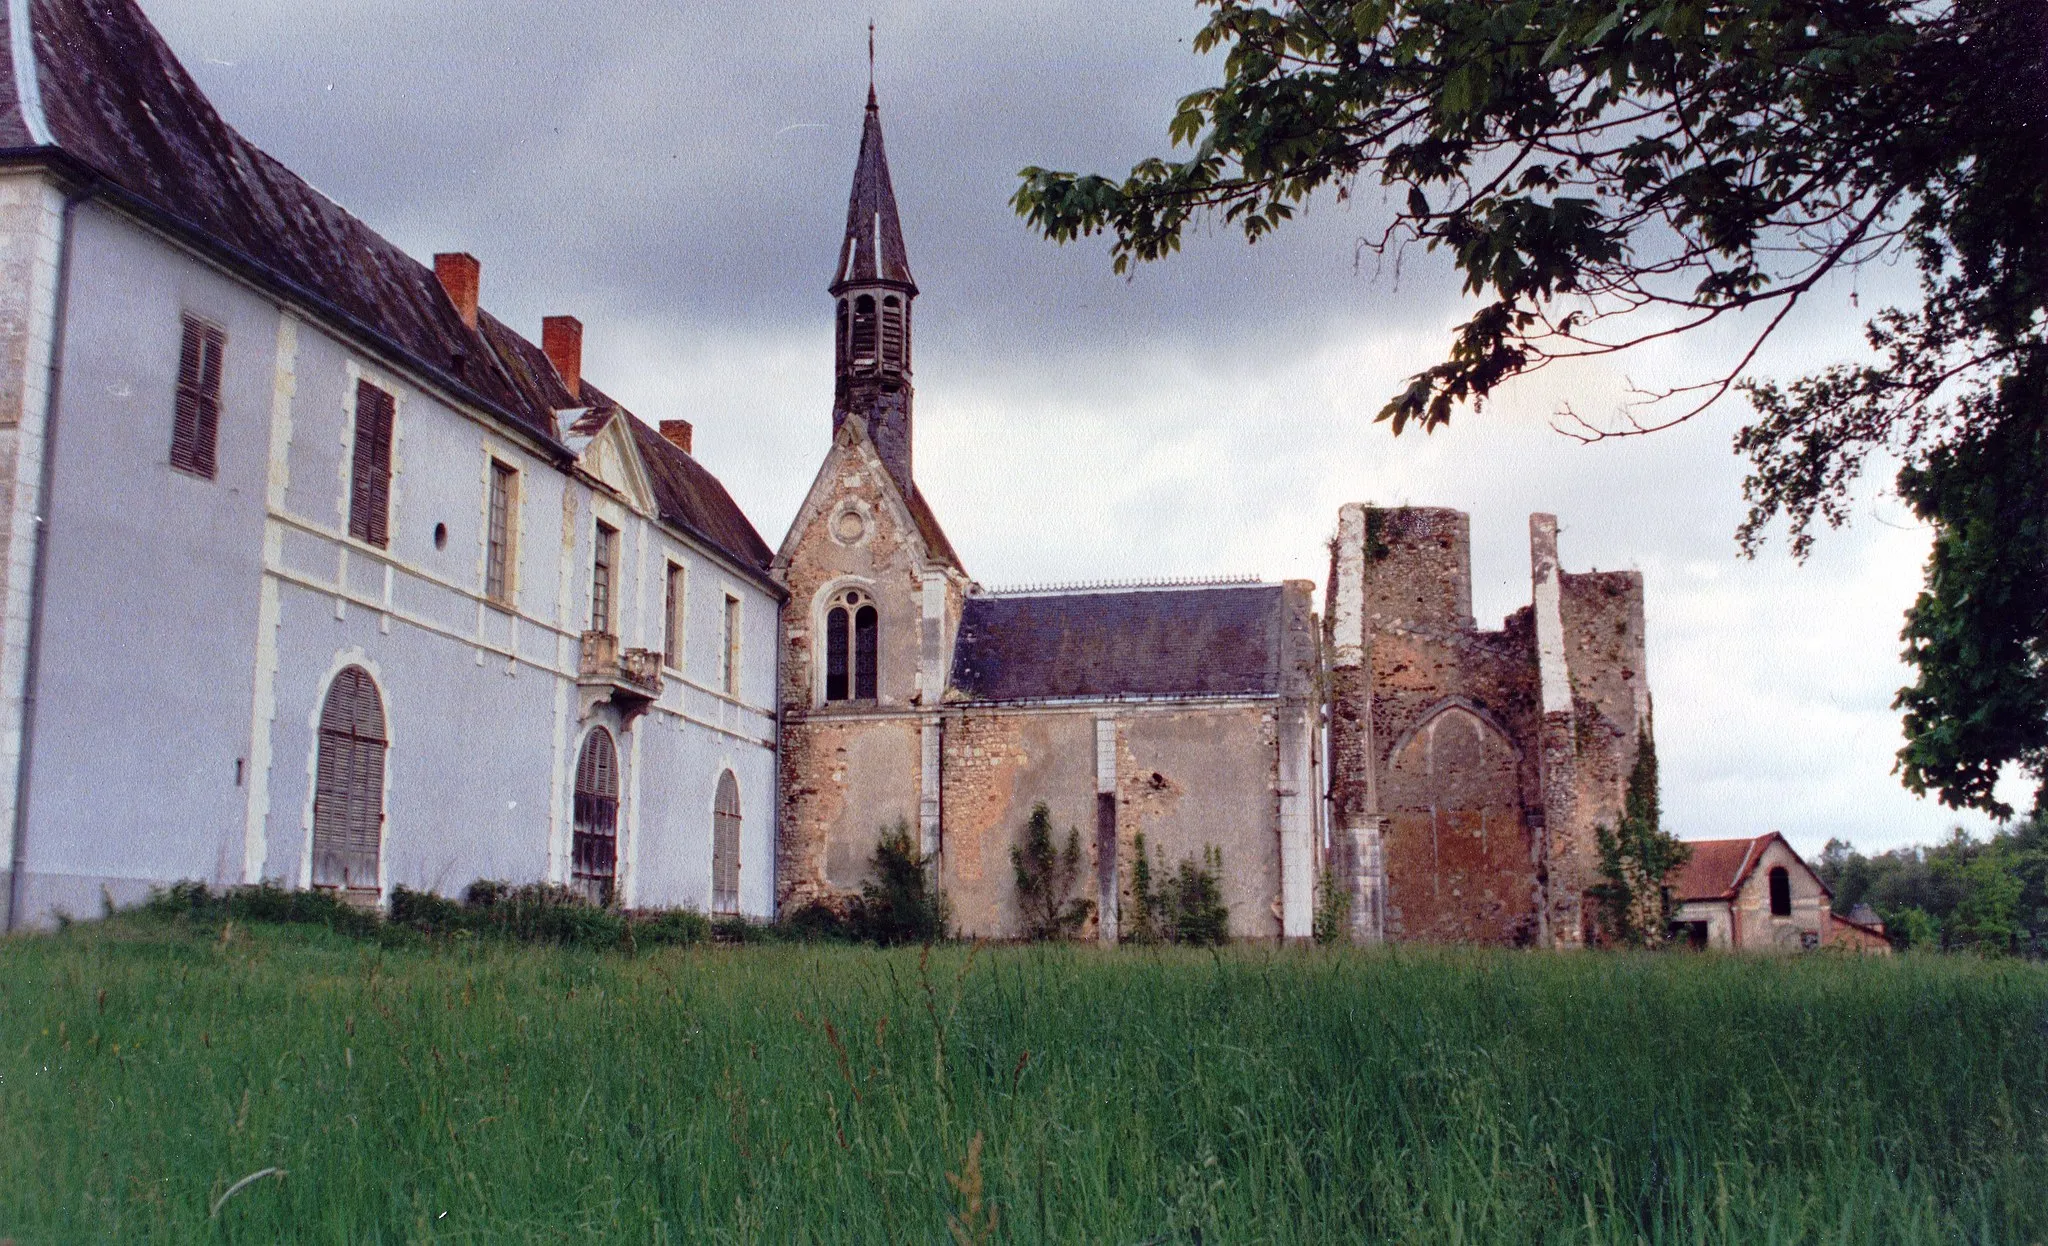 Photo showing: L'ancienne Abbaye de Loroy en 1987. L'abbaye est un des bâtiments présumés d'être "Le domaine mystérieux" dans le livre "Le Grand Meaulnes" d'Alain Fournier.